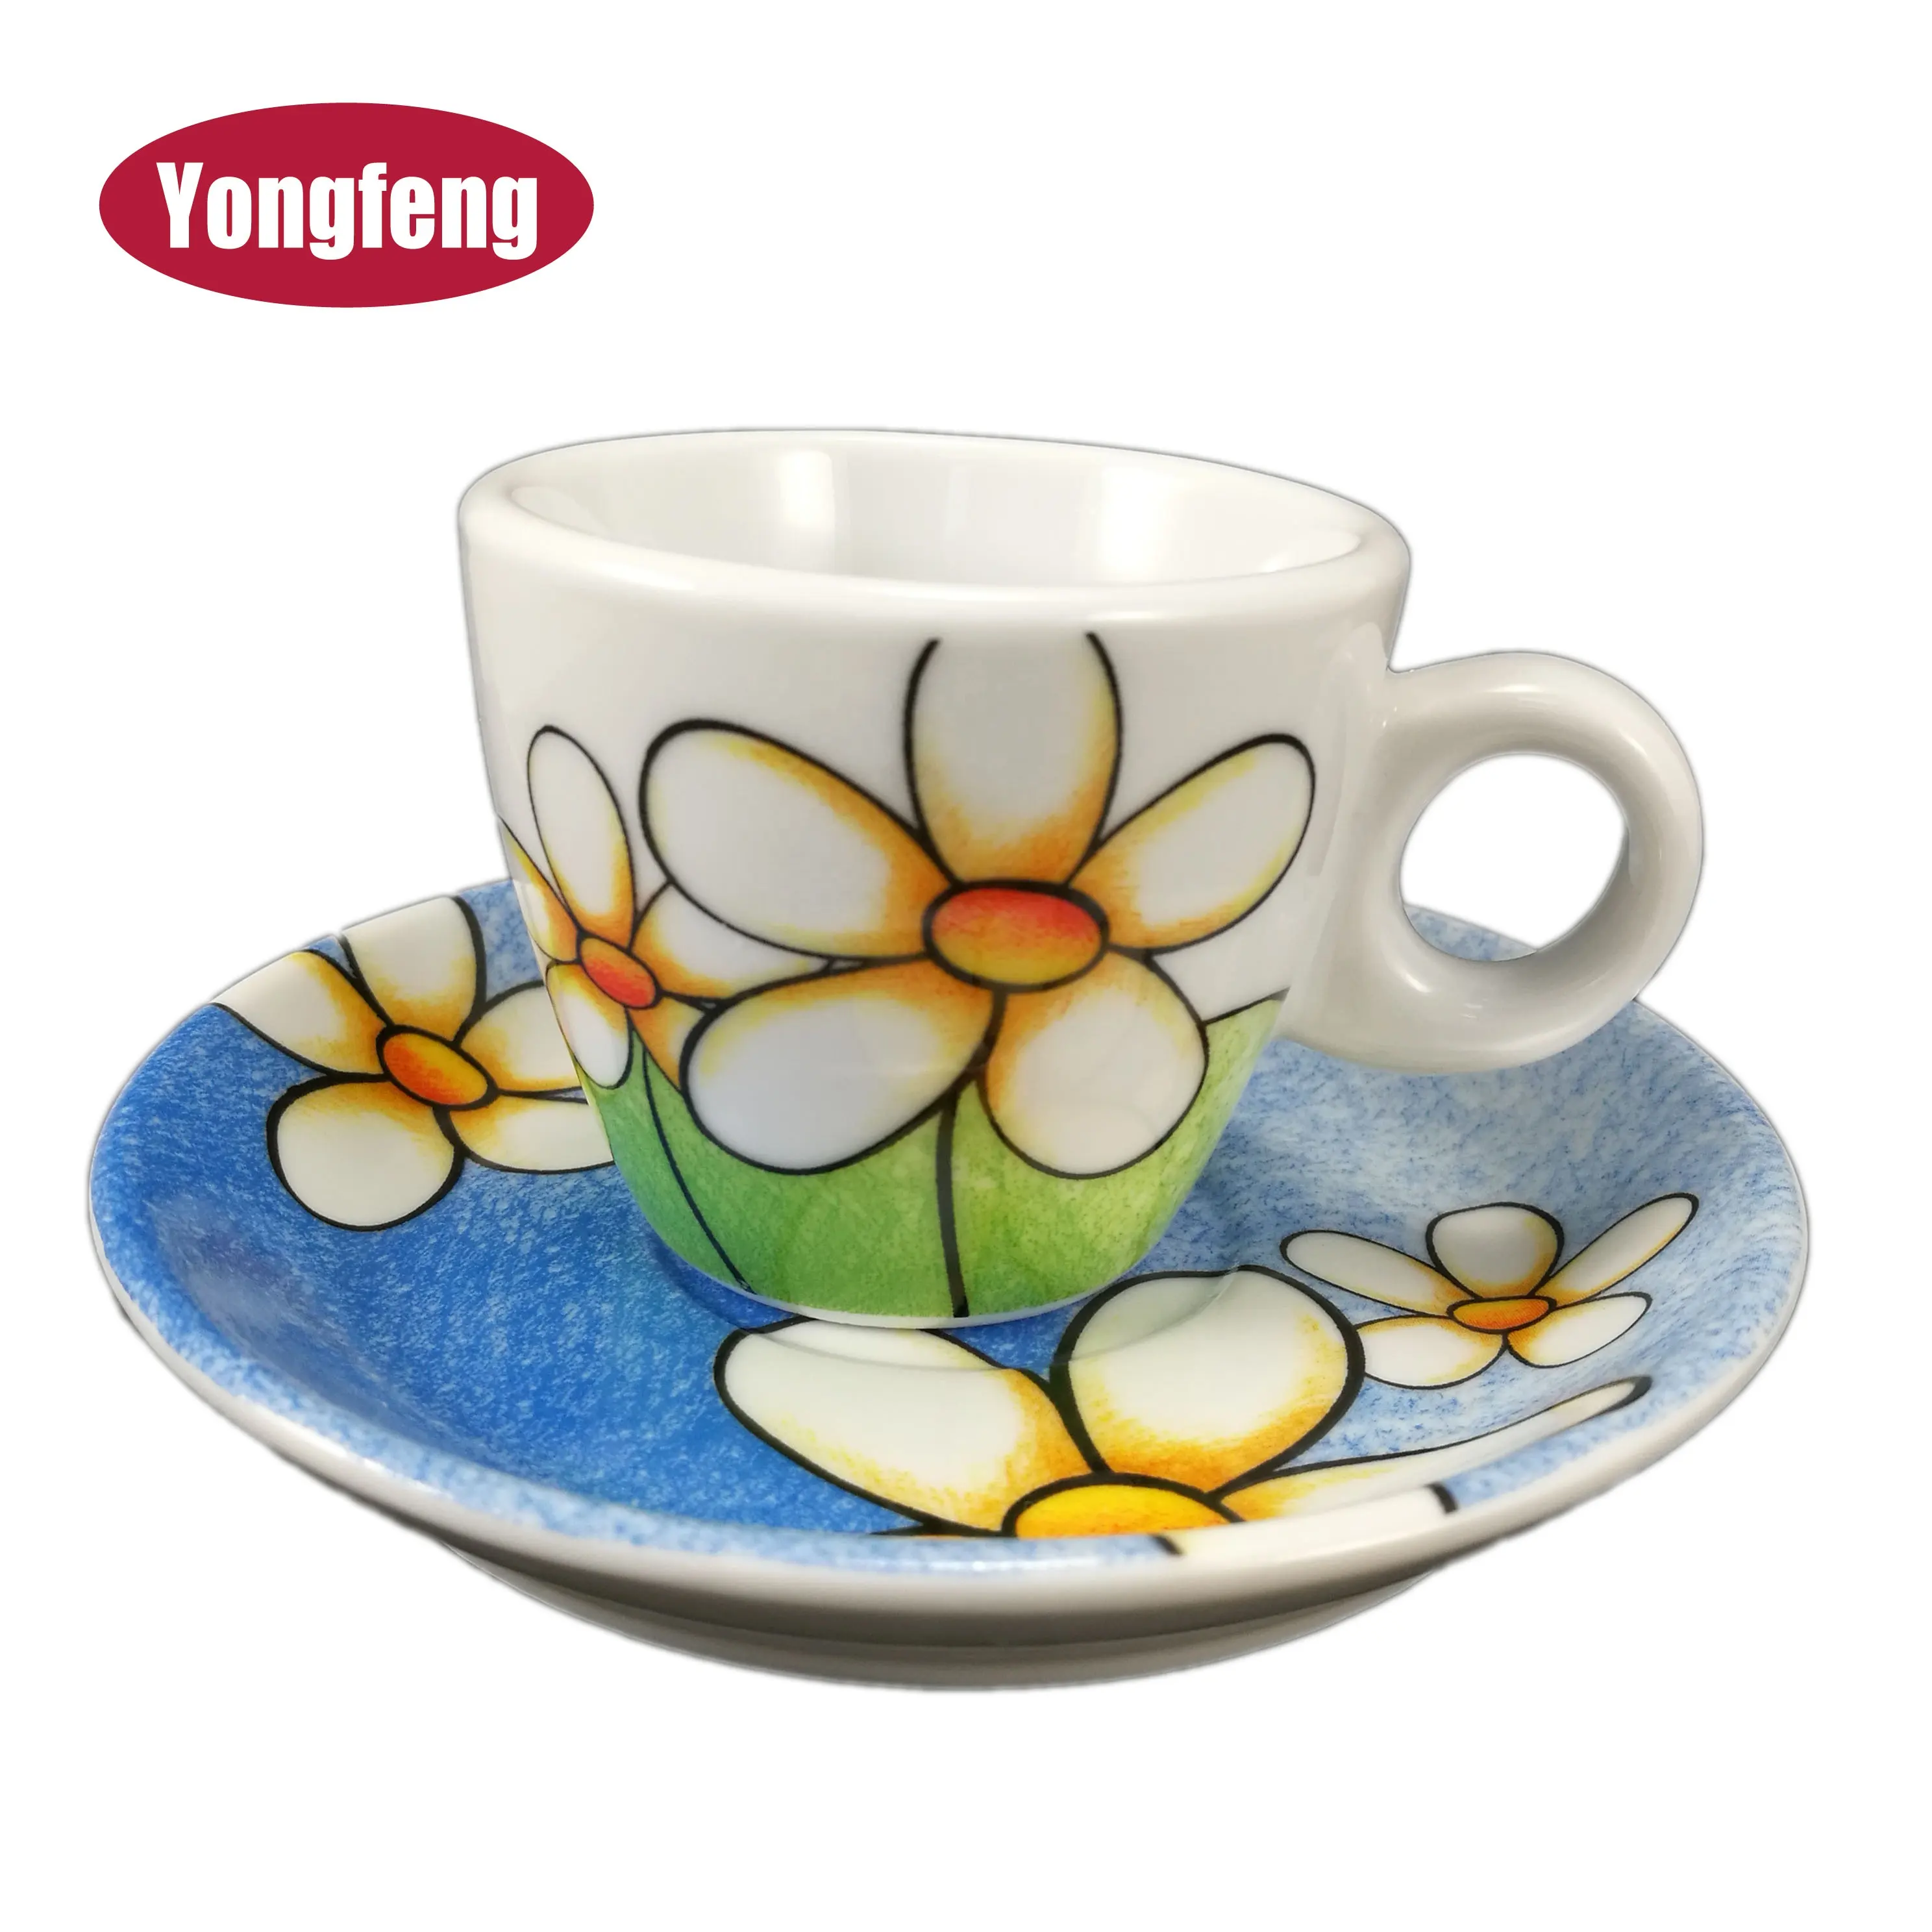 Tam çıkartma kapsama çiçek tasarım 3 oz espresso özel baskılı çay bardağı ve altlık porselen